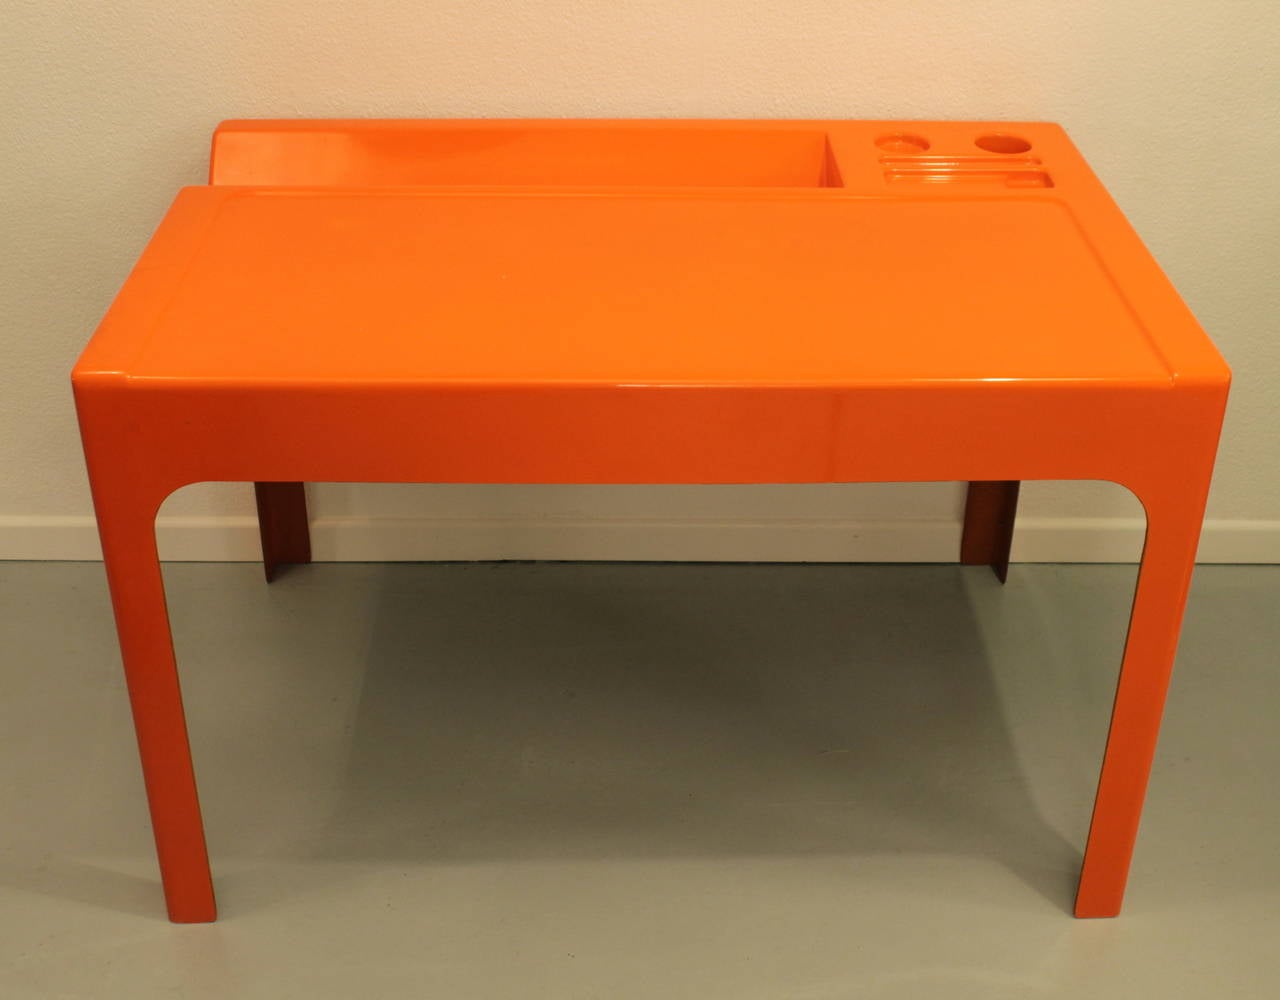 Rare Marc Berthier orange lacquered fiberglass Ozoo desk.
Molded in one piece.